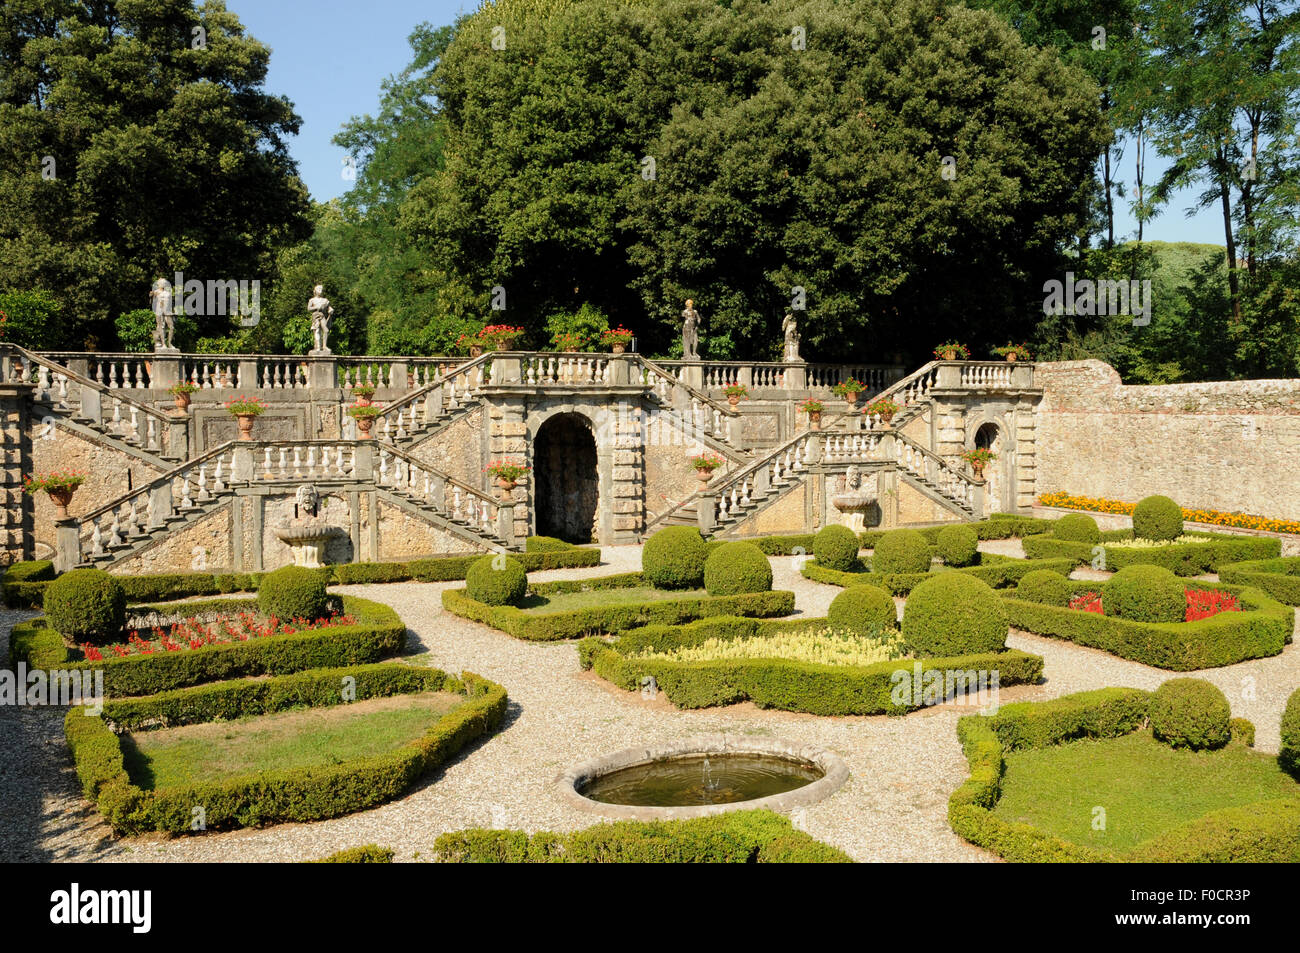 Il giardino fiorito presso la Villa Torrigiani, una Toscana villa storica risalente alla seconda metà del XVI secolo. Foto Stock